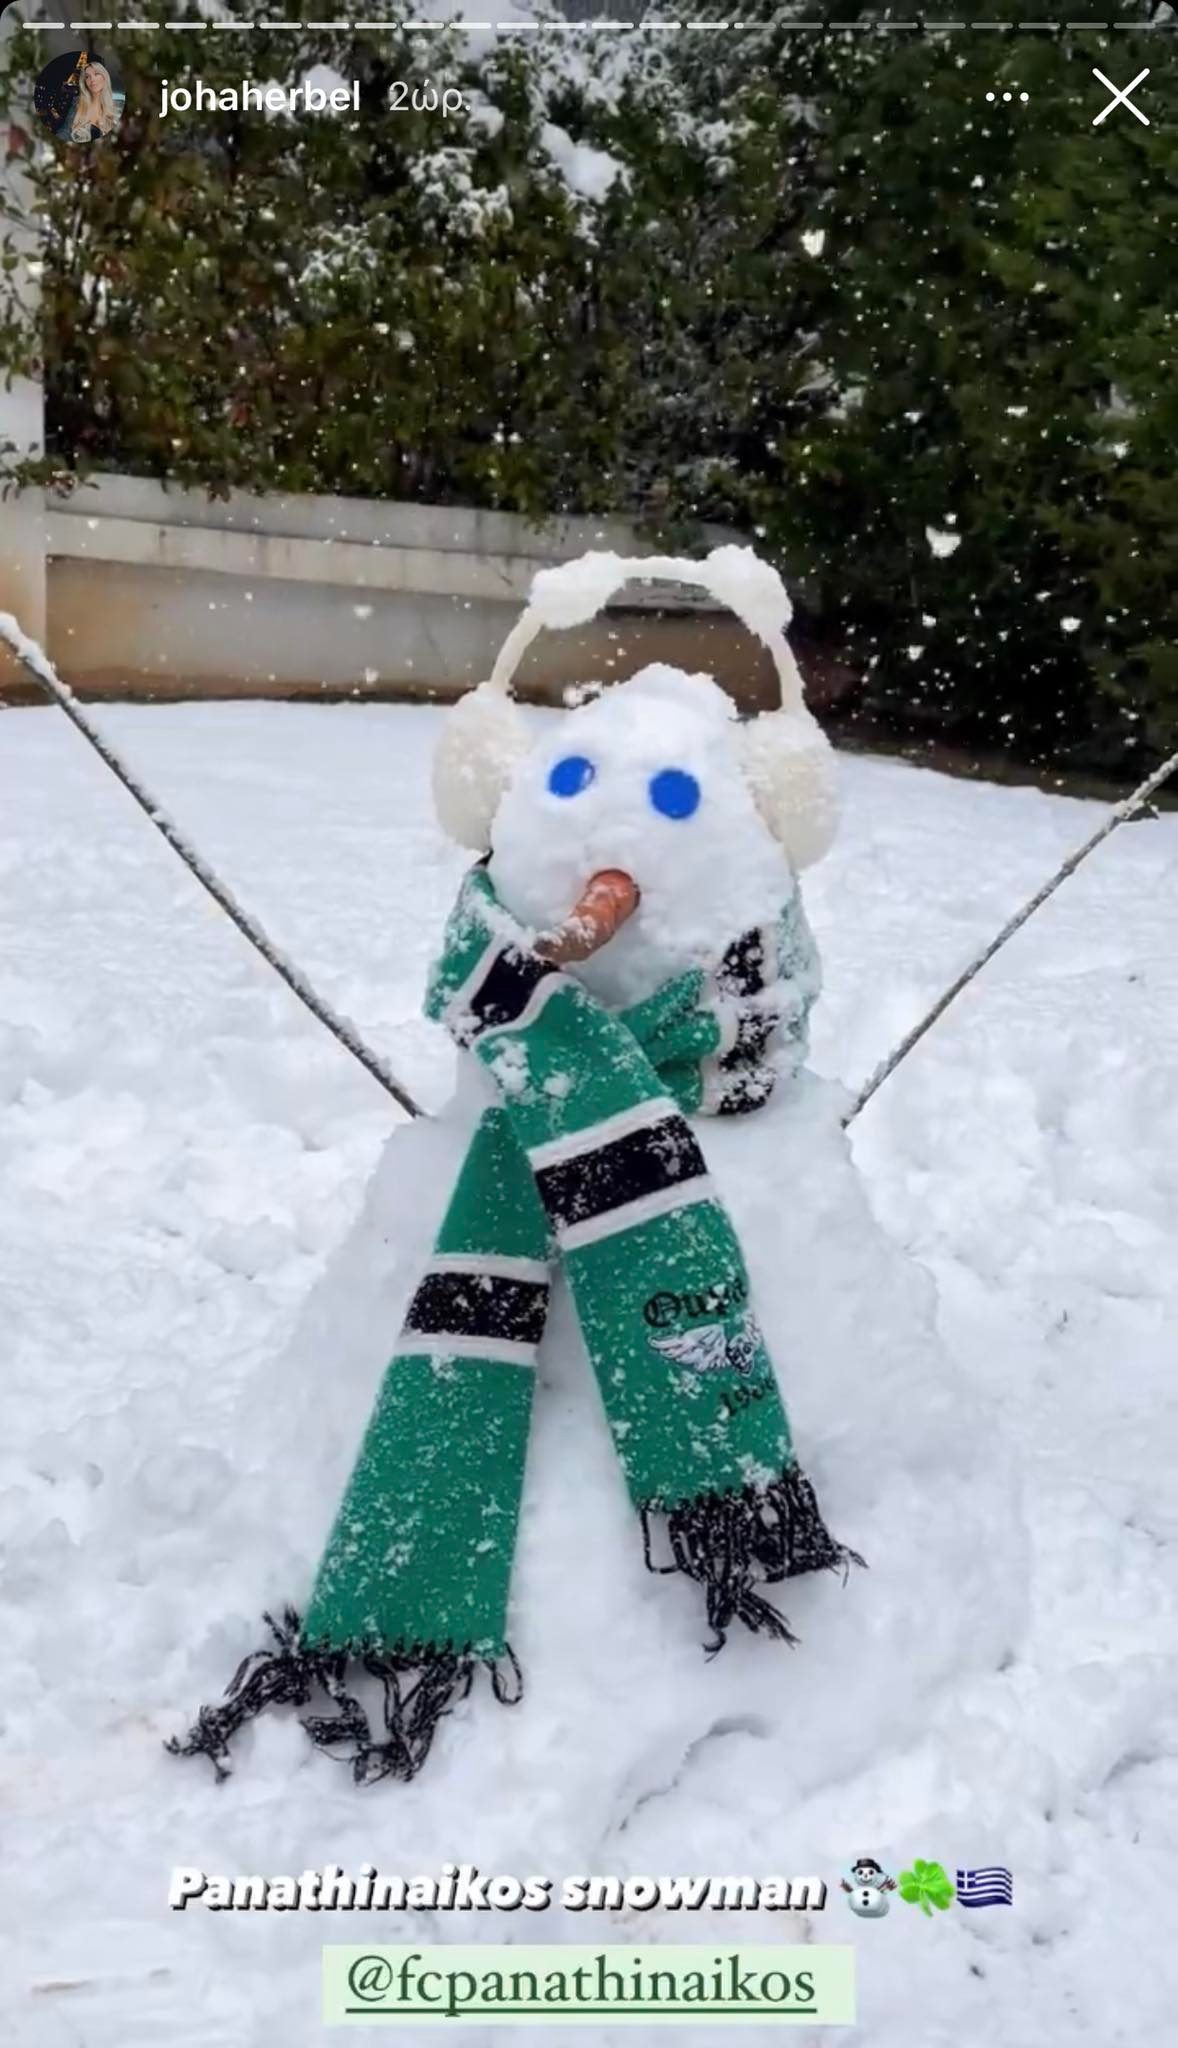 Έφτιαξε χιονάνθρωπο για τον Παναθηναϊκό ο Παλάσιος (pic)